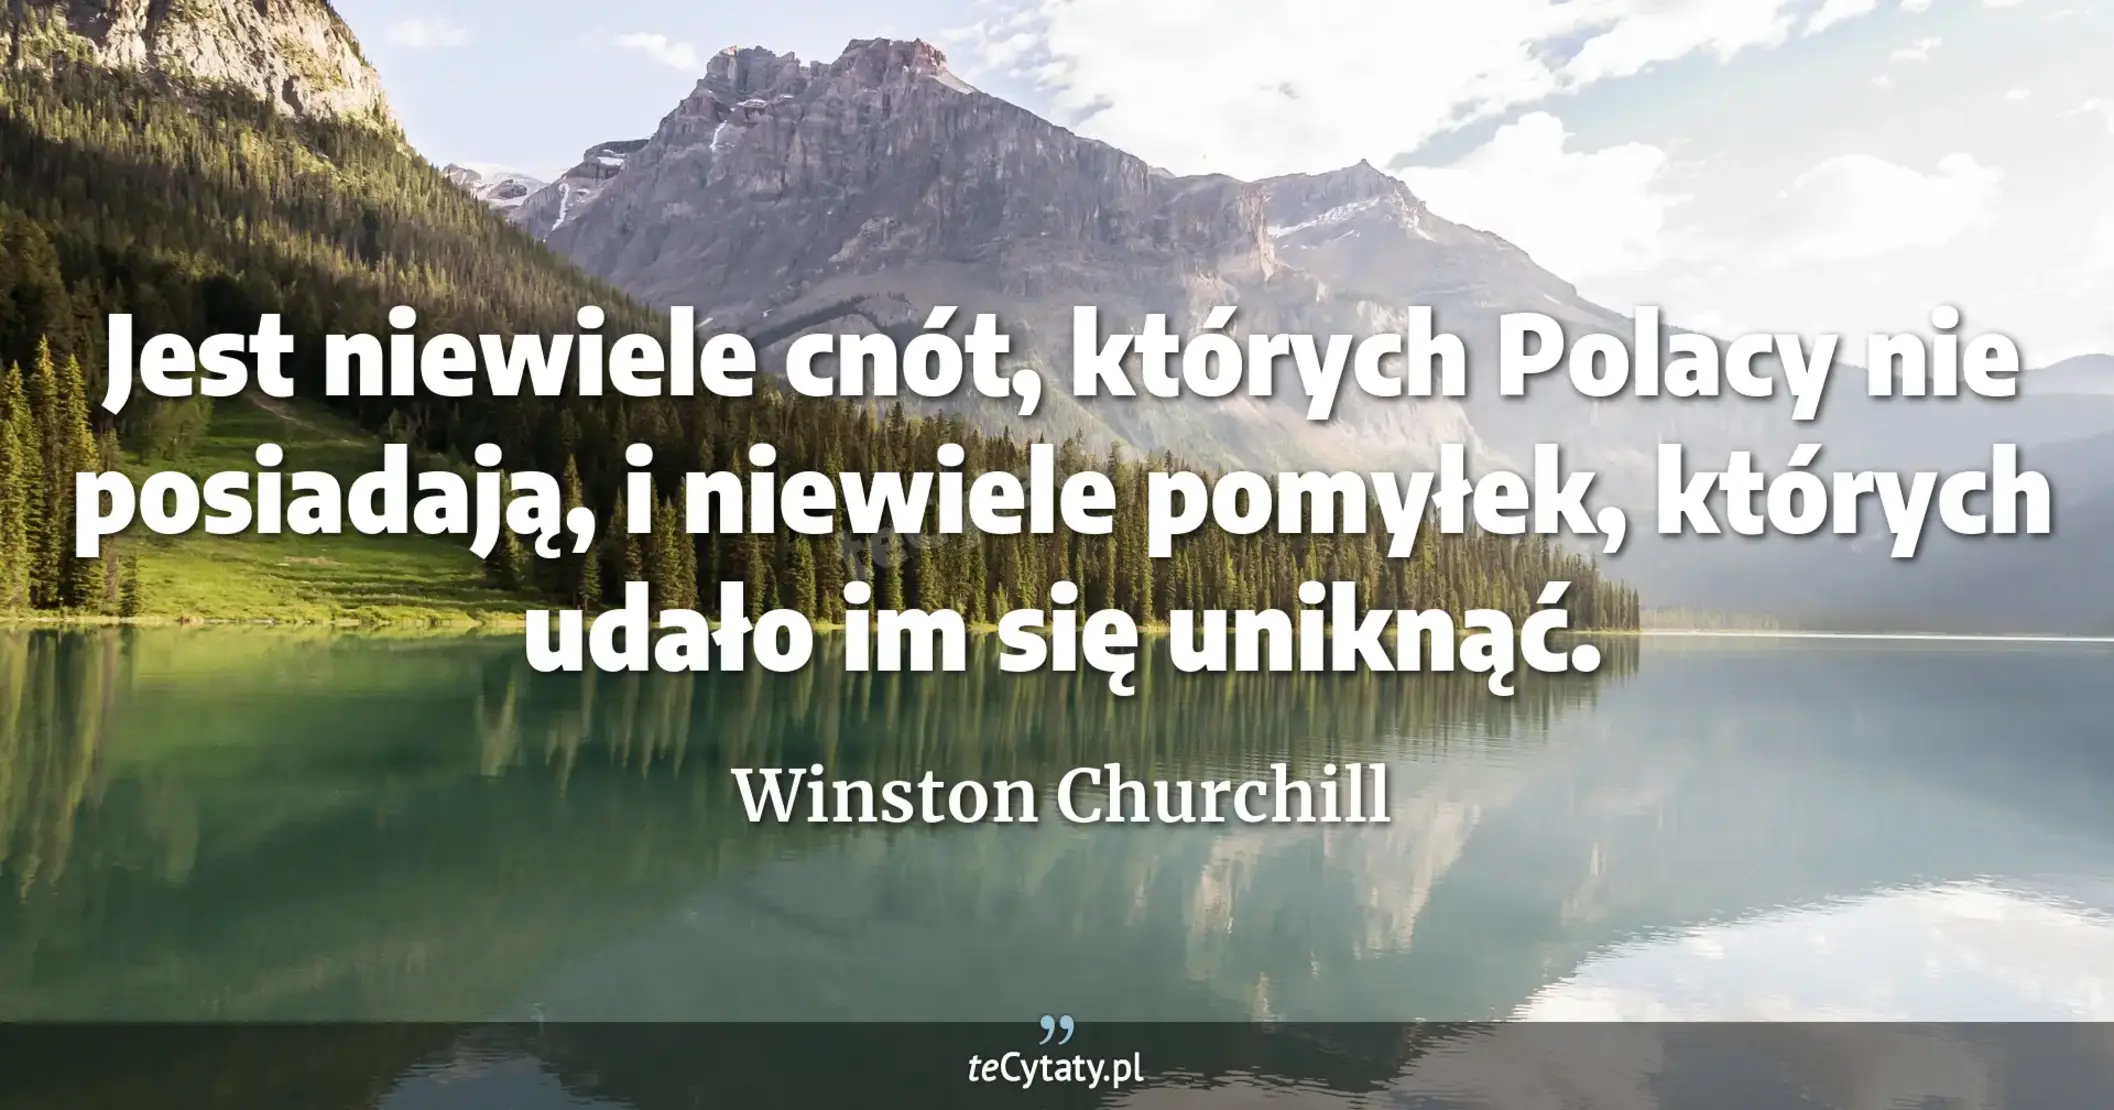 Jest niewiele cnót, których Polacy nie posiadają, i niewiele pomyłek, których udało im się uniknąć. - Winston Churchill